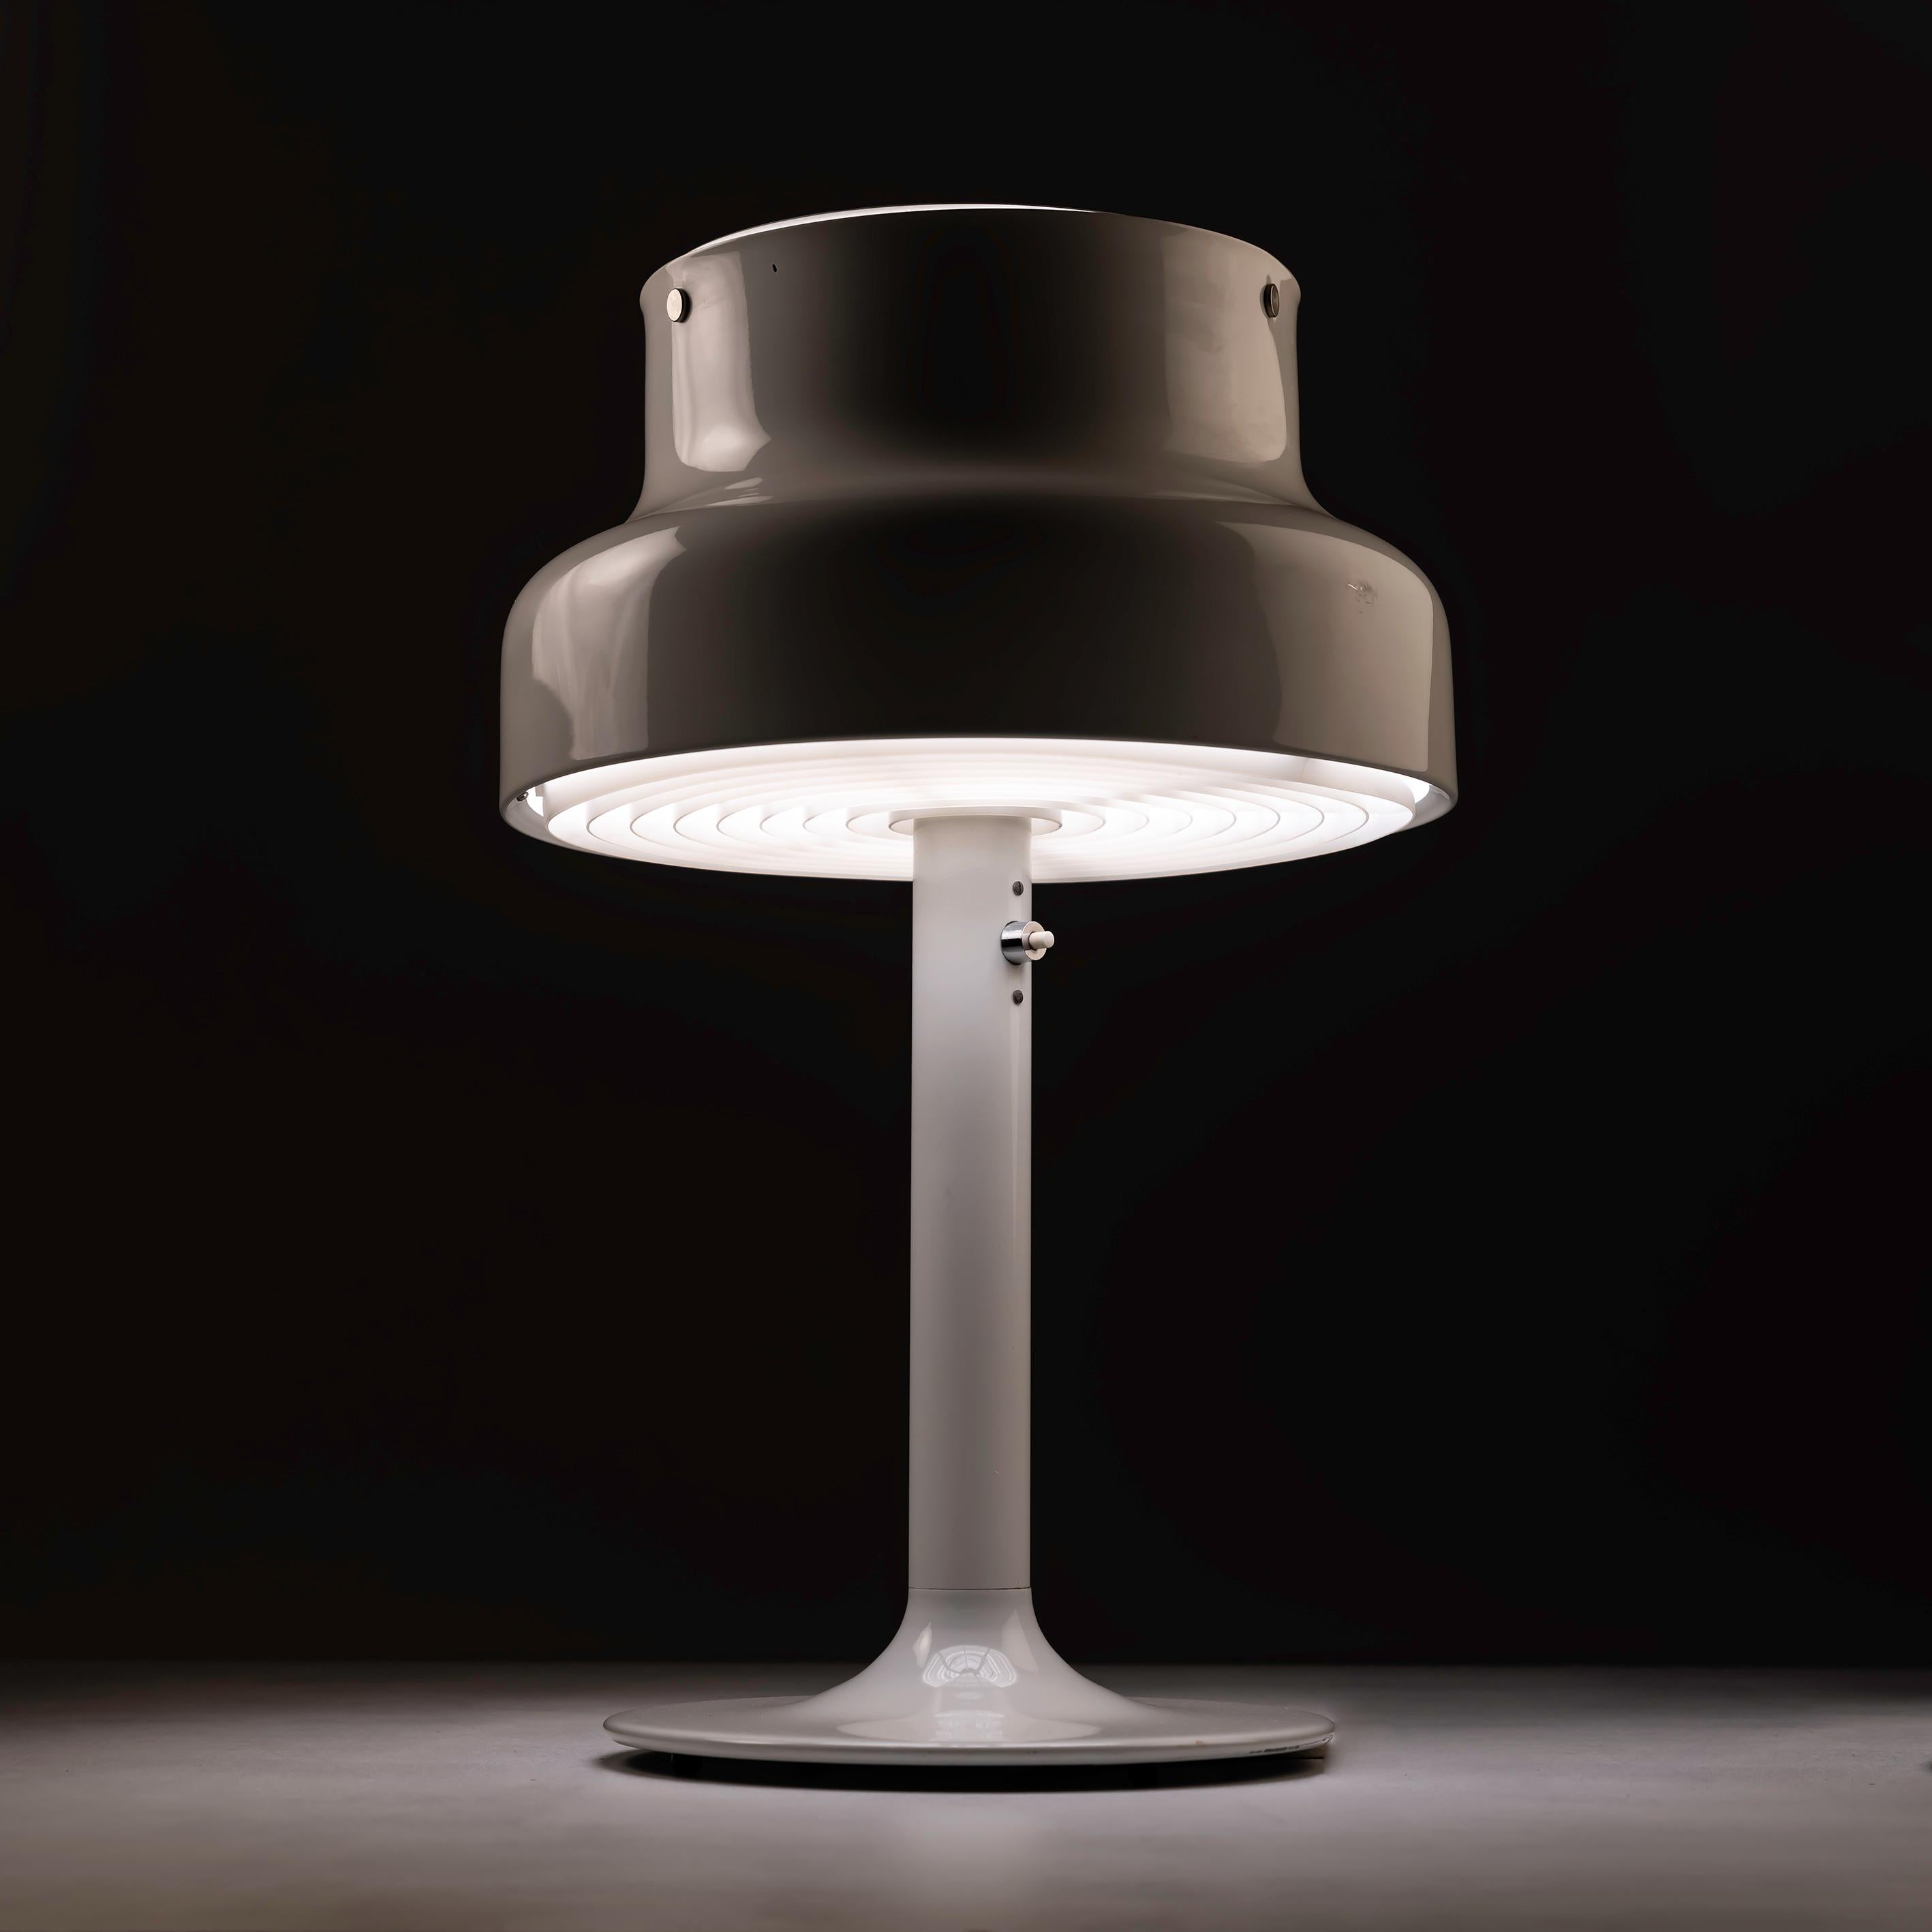 La lampe de table Bumling d'Anders Pehrson pour Ateljé Lyktan, datant des années 1970, offre une occasion irrésistible d'enrichir votre espace avec un design scandinave emblématique. La création de Pehrson est un exemple parfait de minimalisme